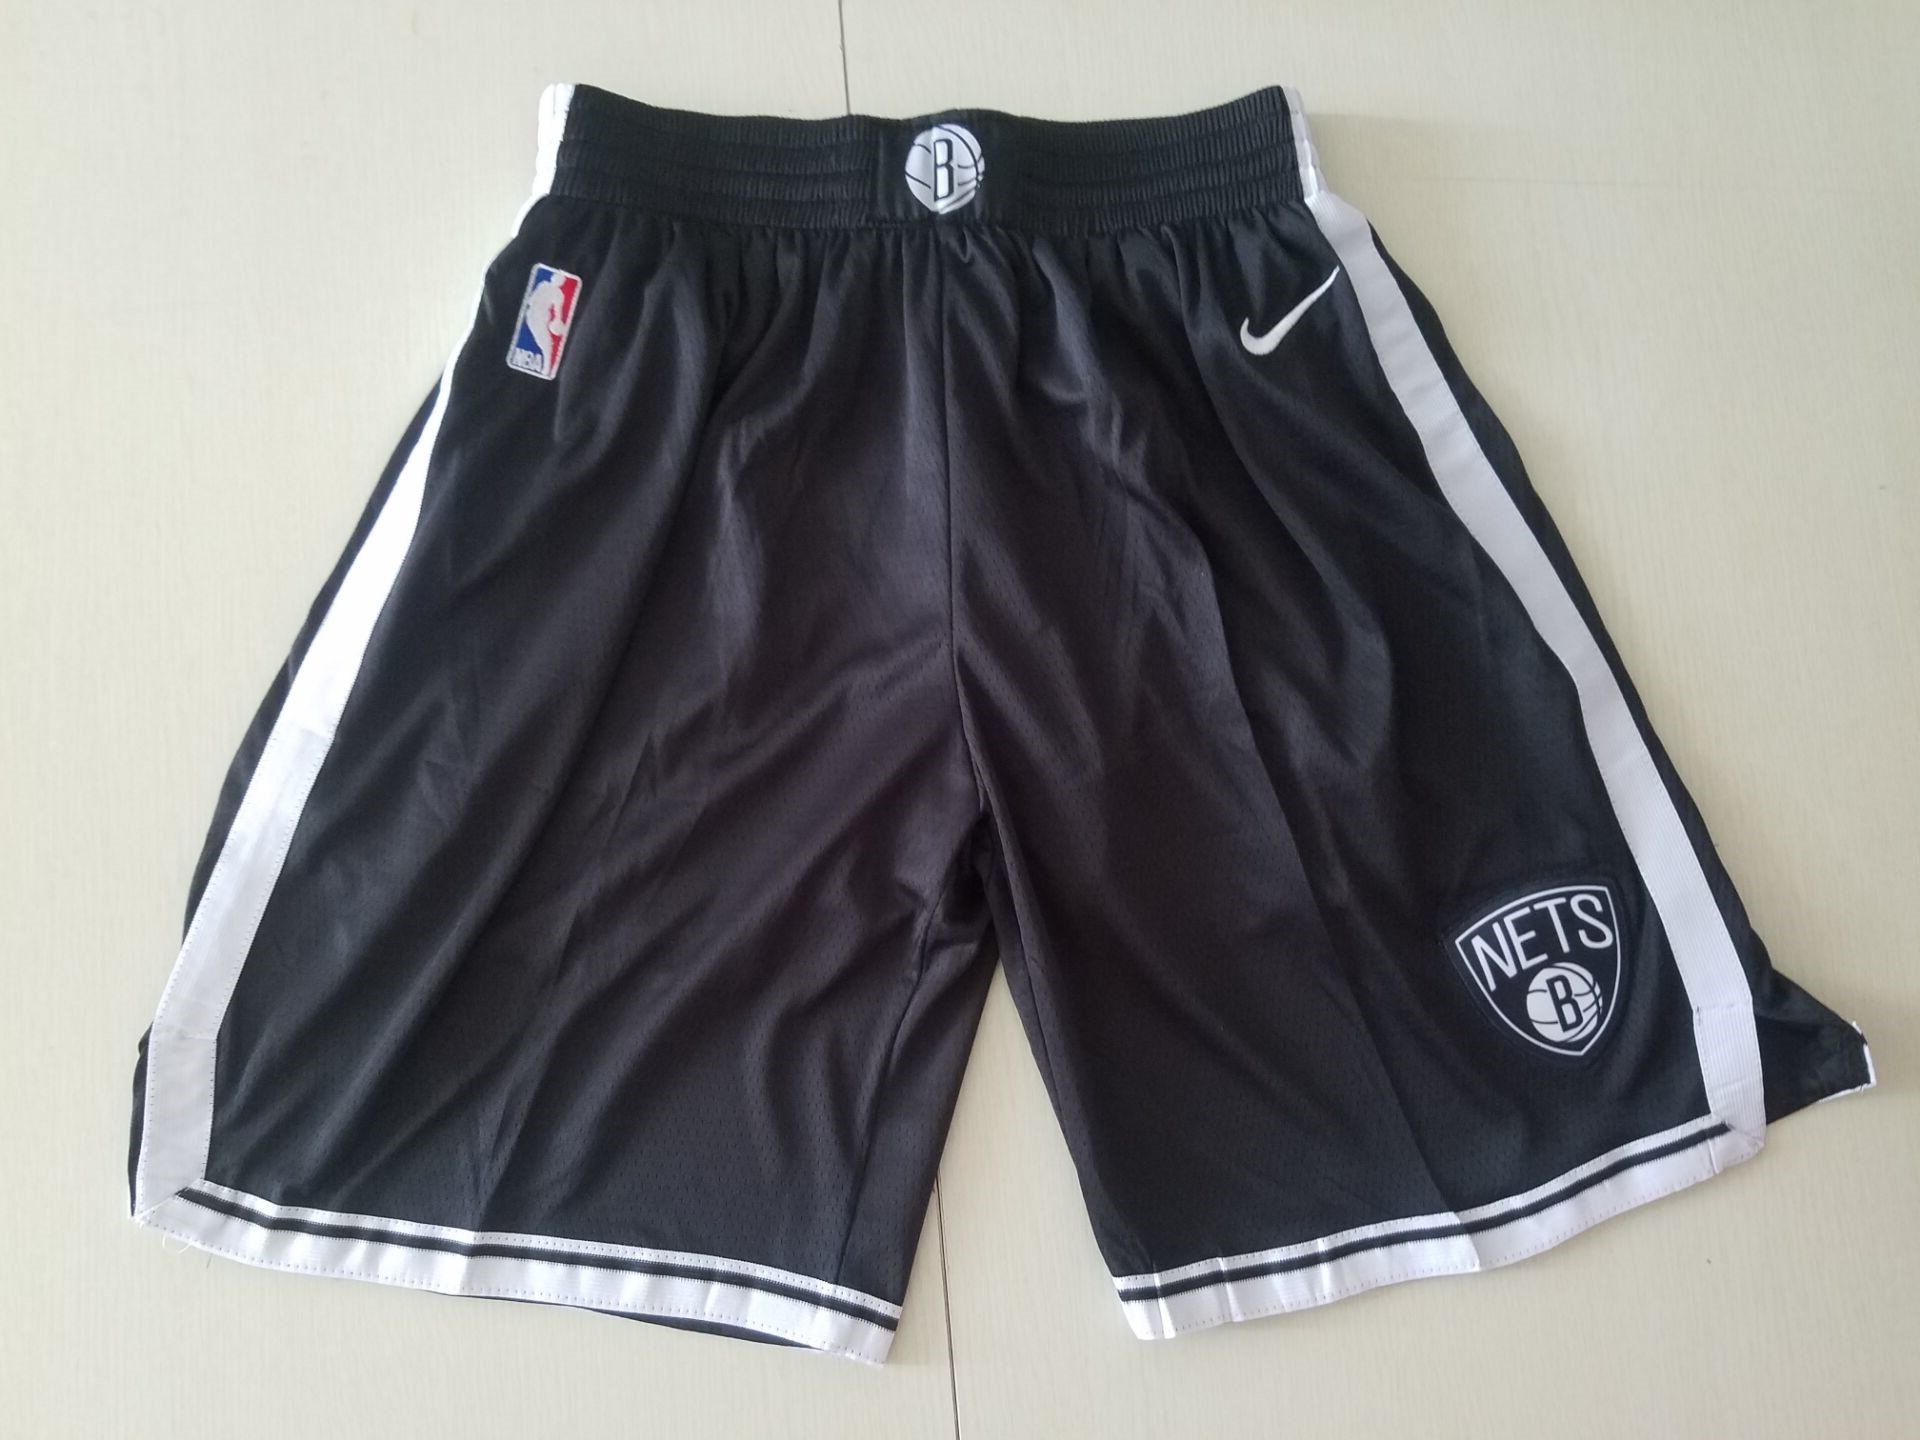 Youth NBA Nike Brooklyn Nets white shorts style2->youth nba jersey->Youth Jersey